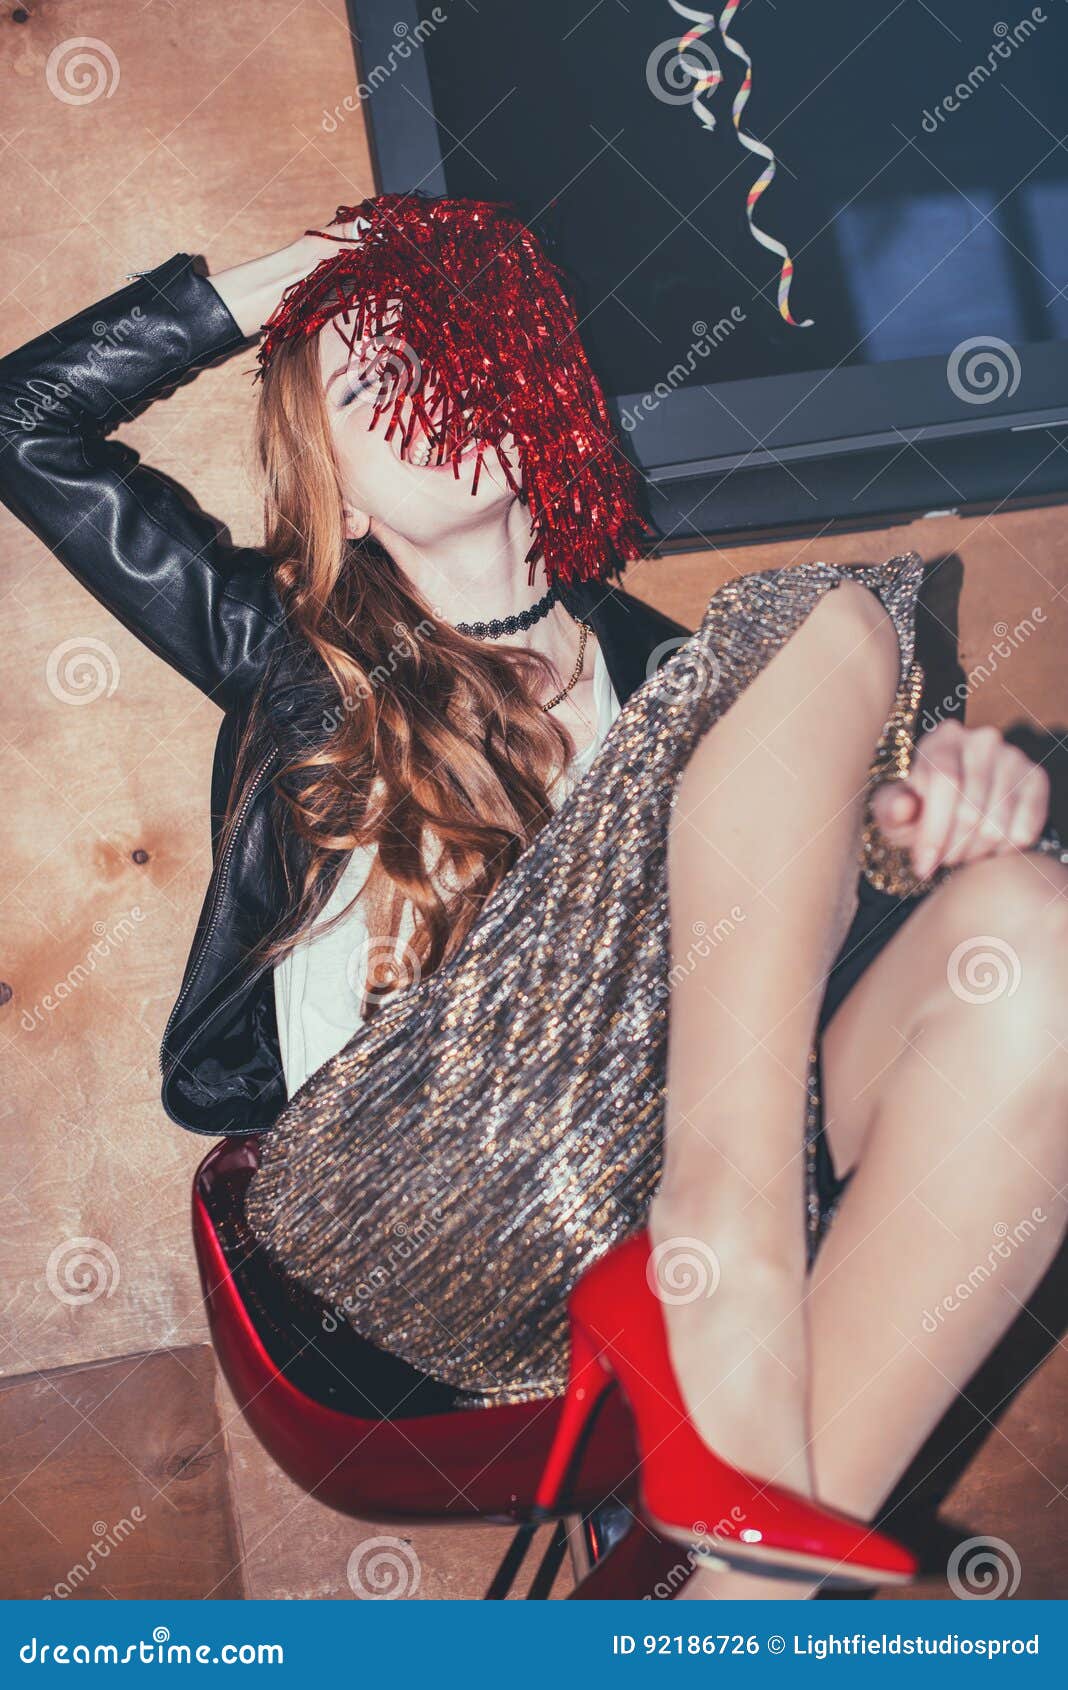 drunk girlfriend after party porn gallerie